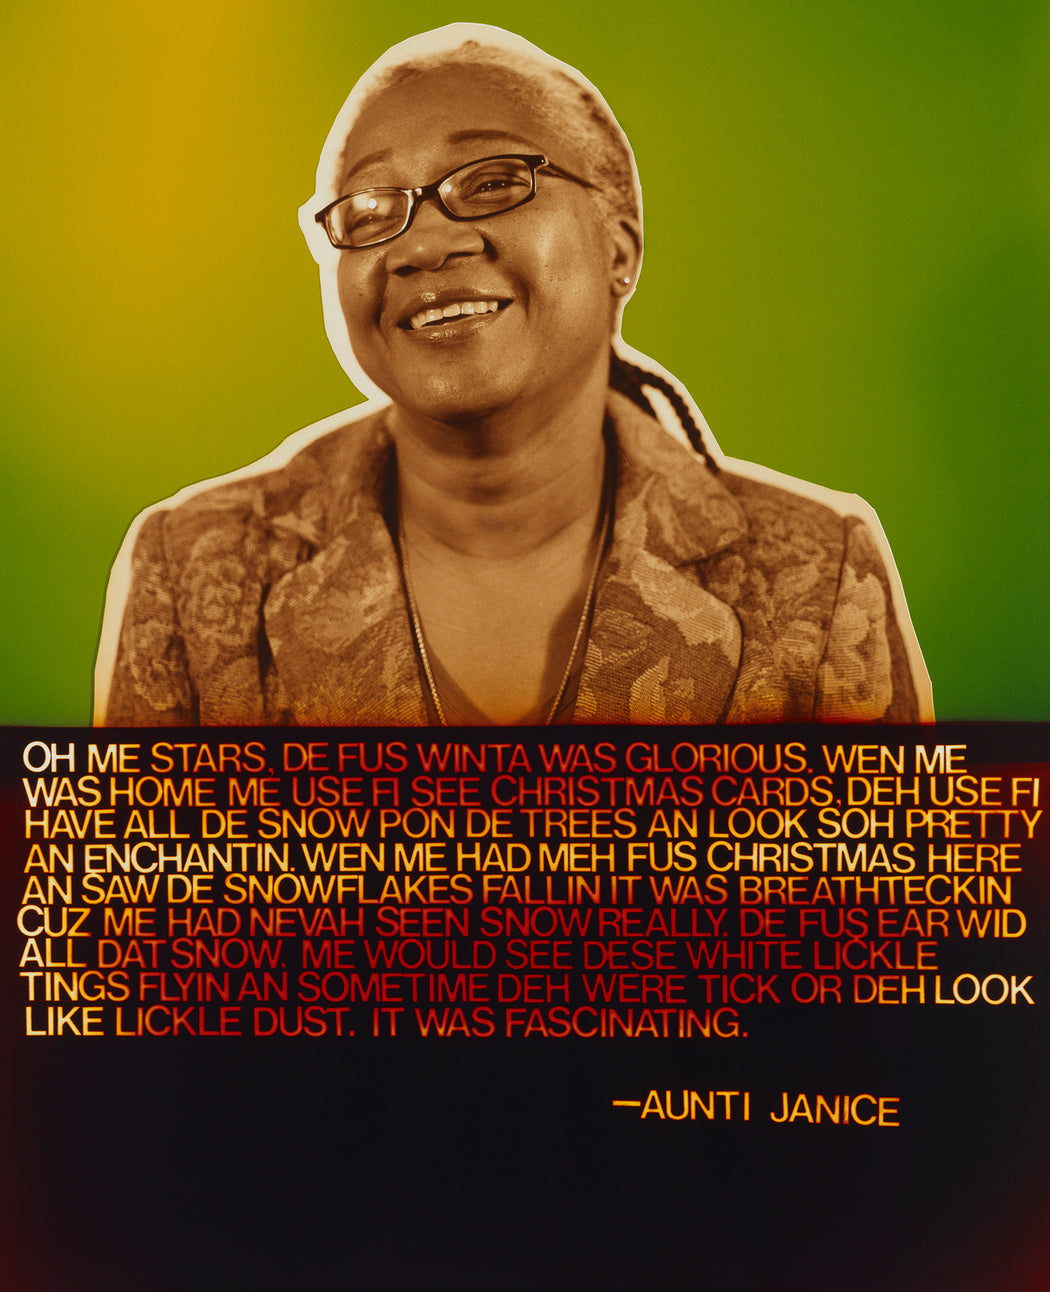 Aunti Janice